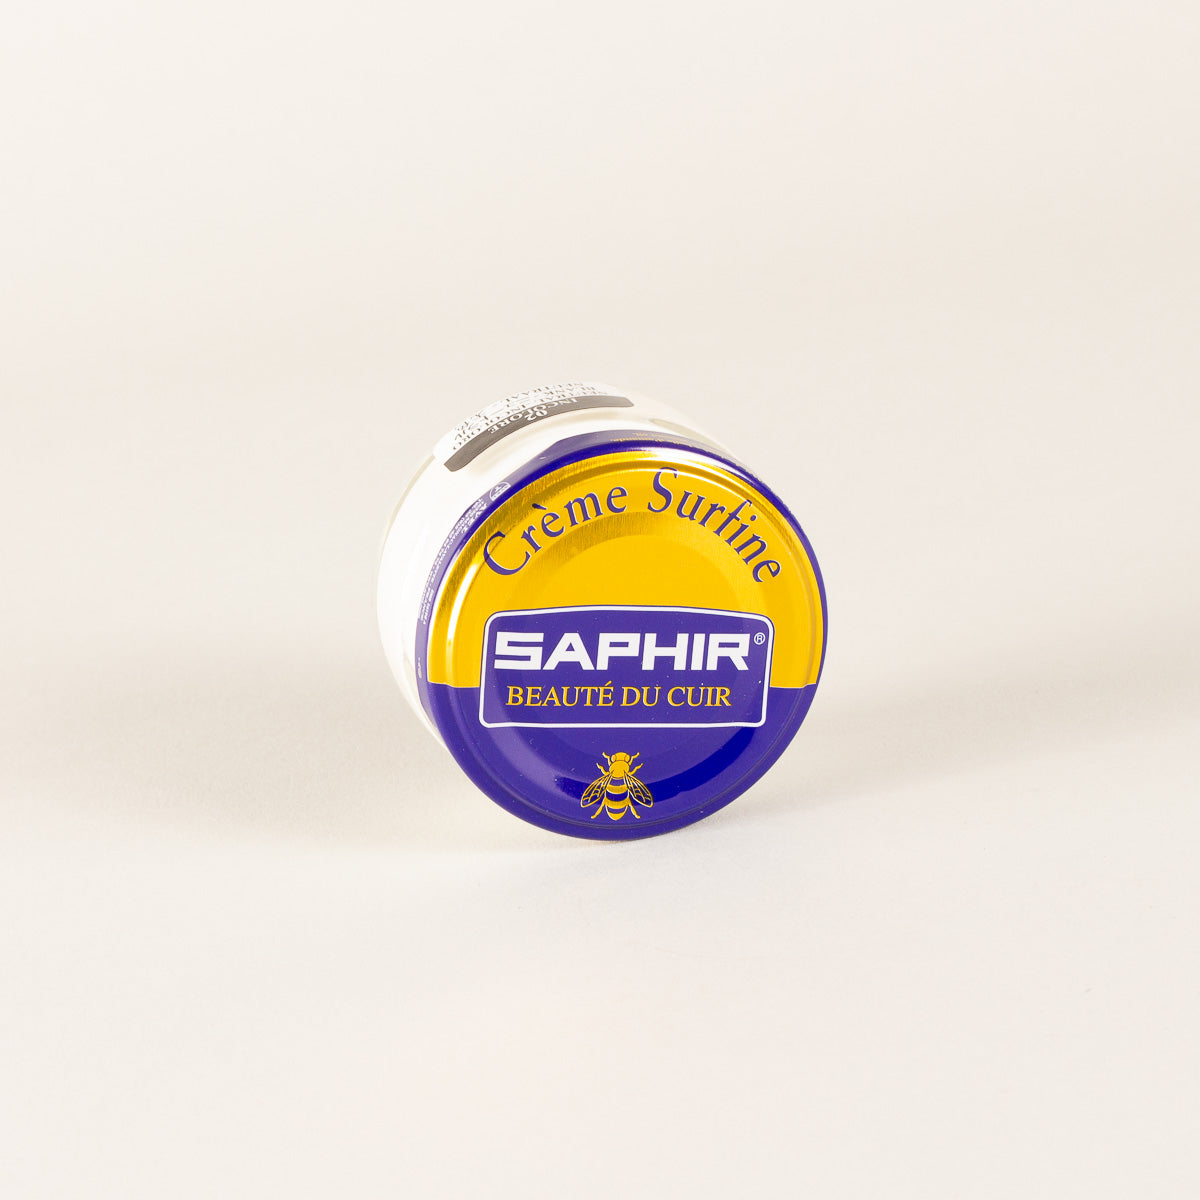 Saphir Creme Surfine (cirage) Creme